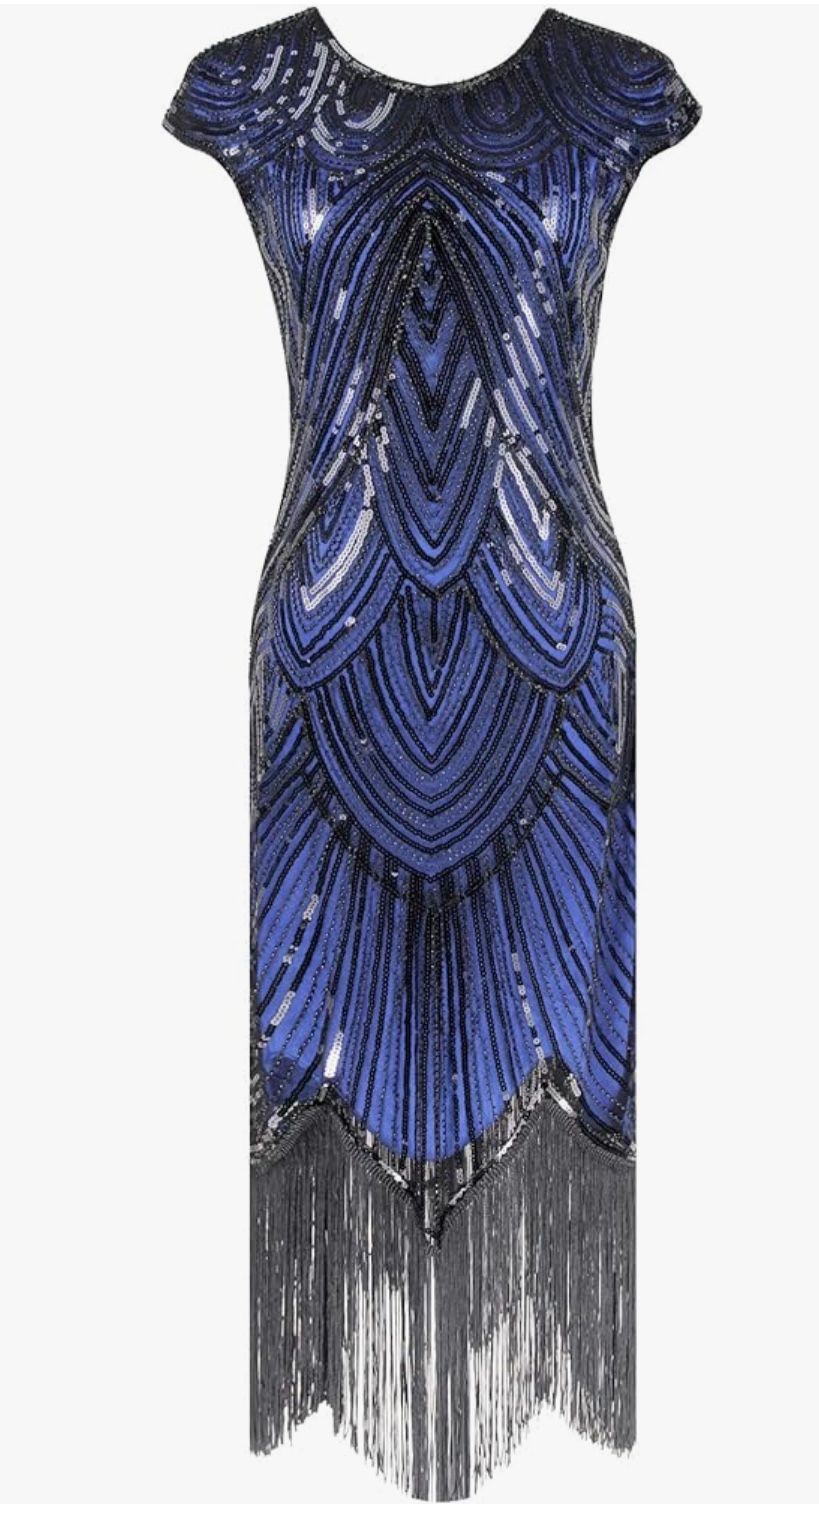 fundaisy | Dresses | Fundaisy Blue Black Sequin Sleeveless Gatsby...